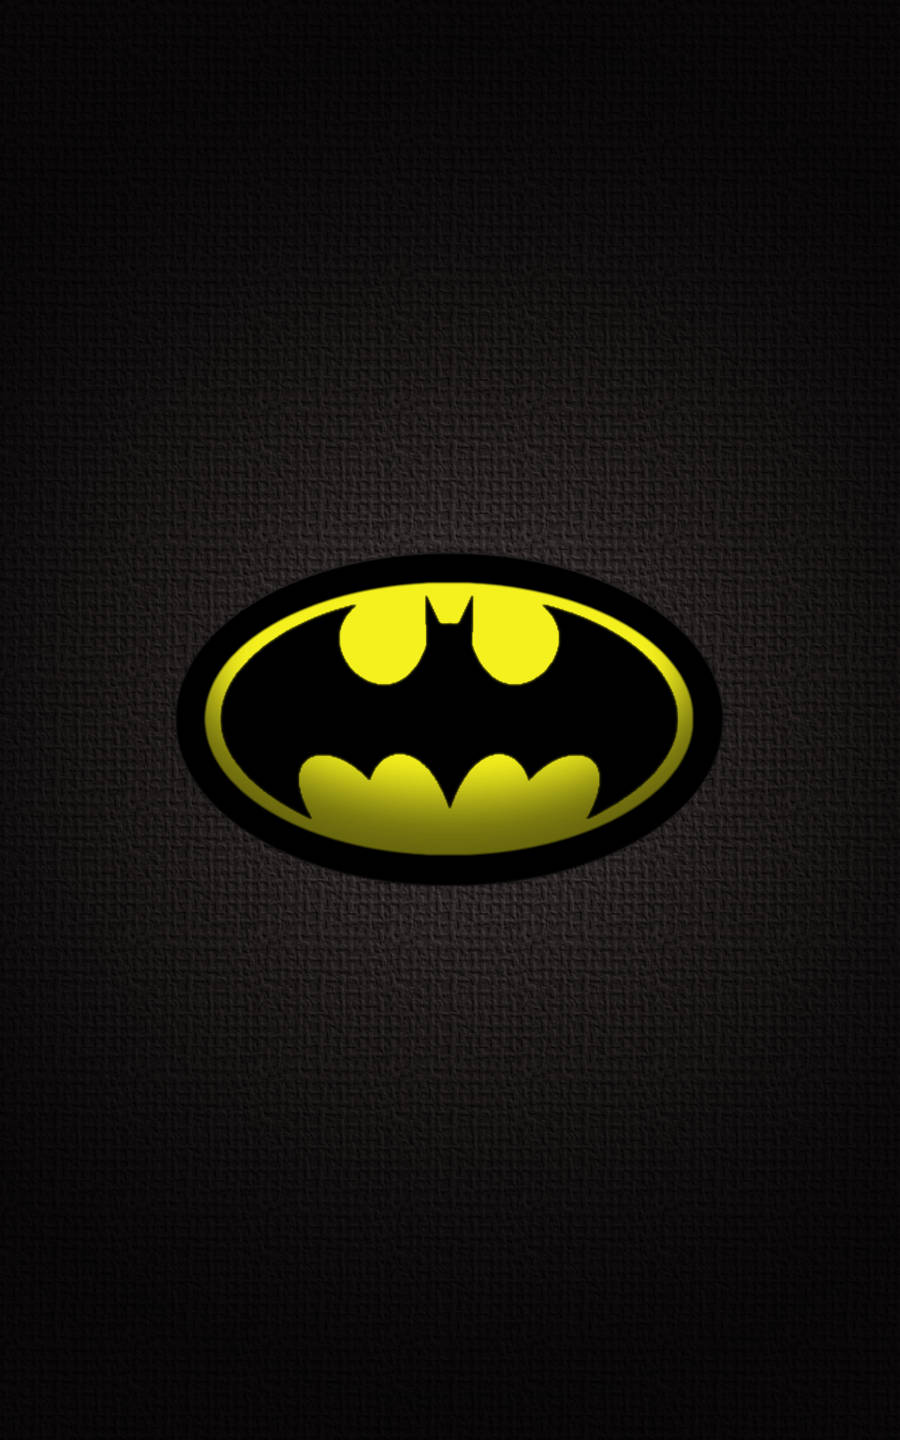 Clásicologotipo De Batman En Un Original Iphone 4 Fondo de pantalla